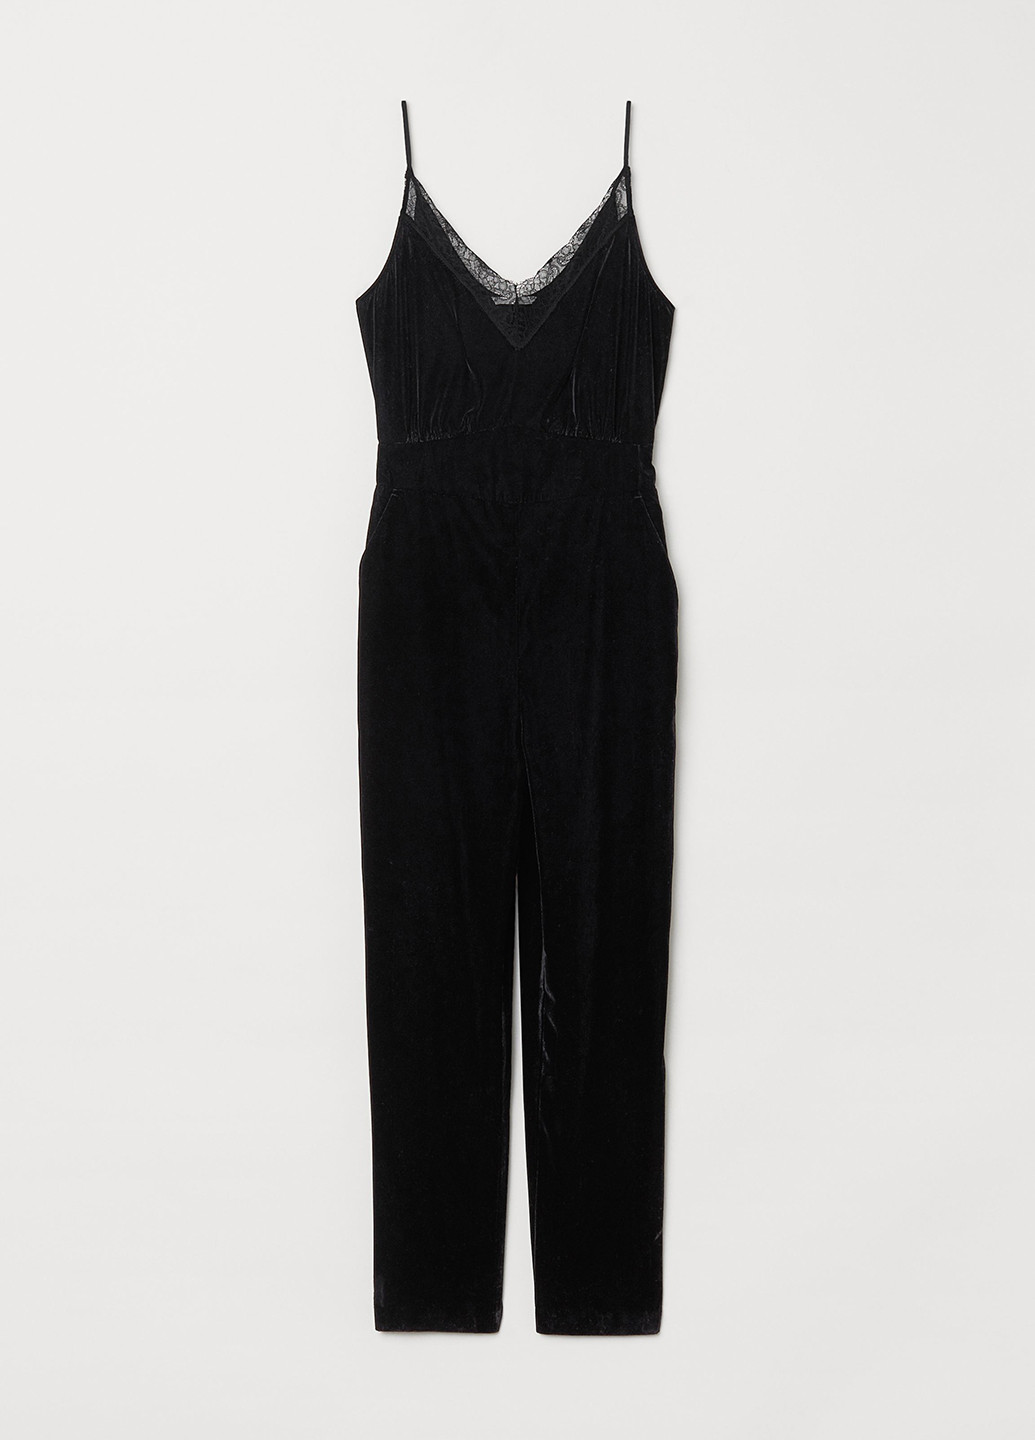 Комбинезон H&M комбинезон-брюки однотонный чёрный кэжуал велюр